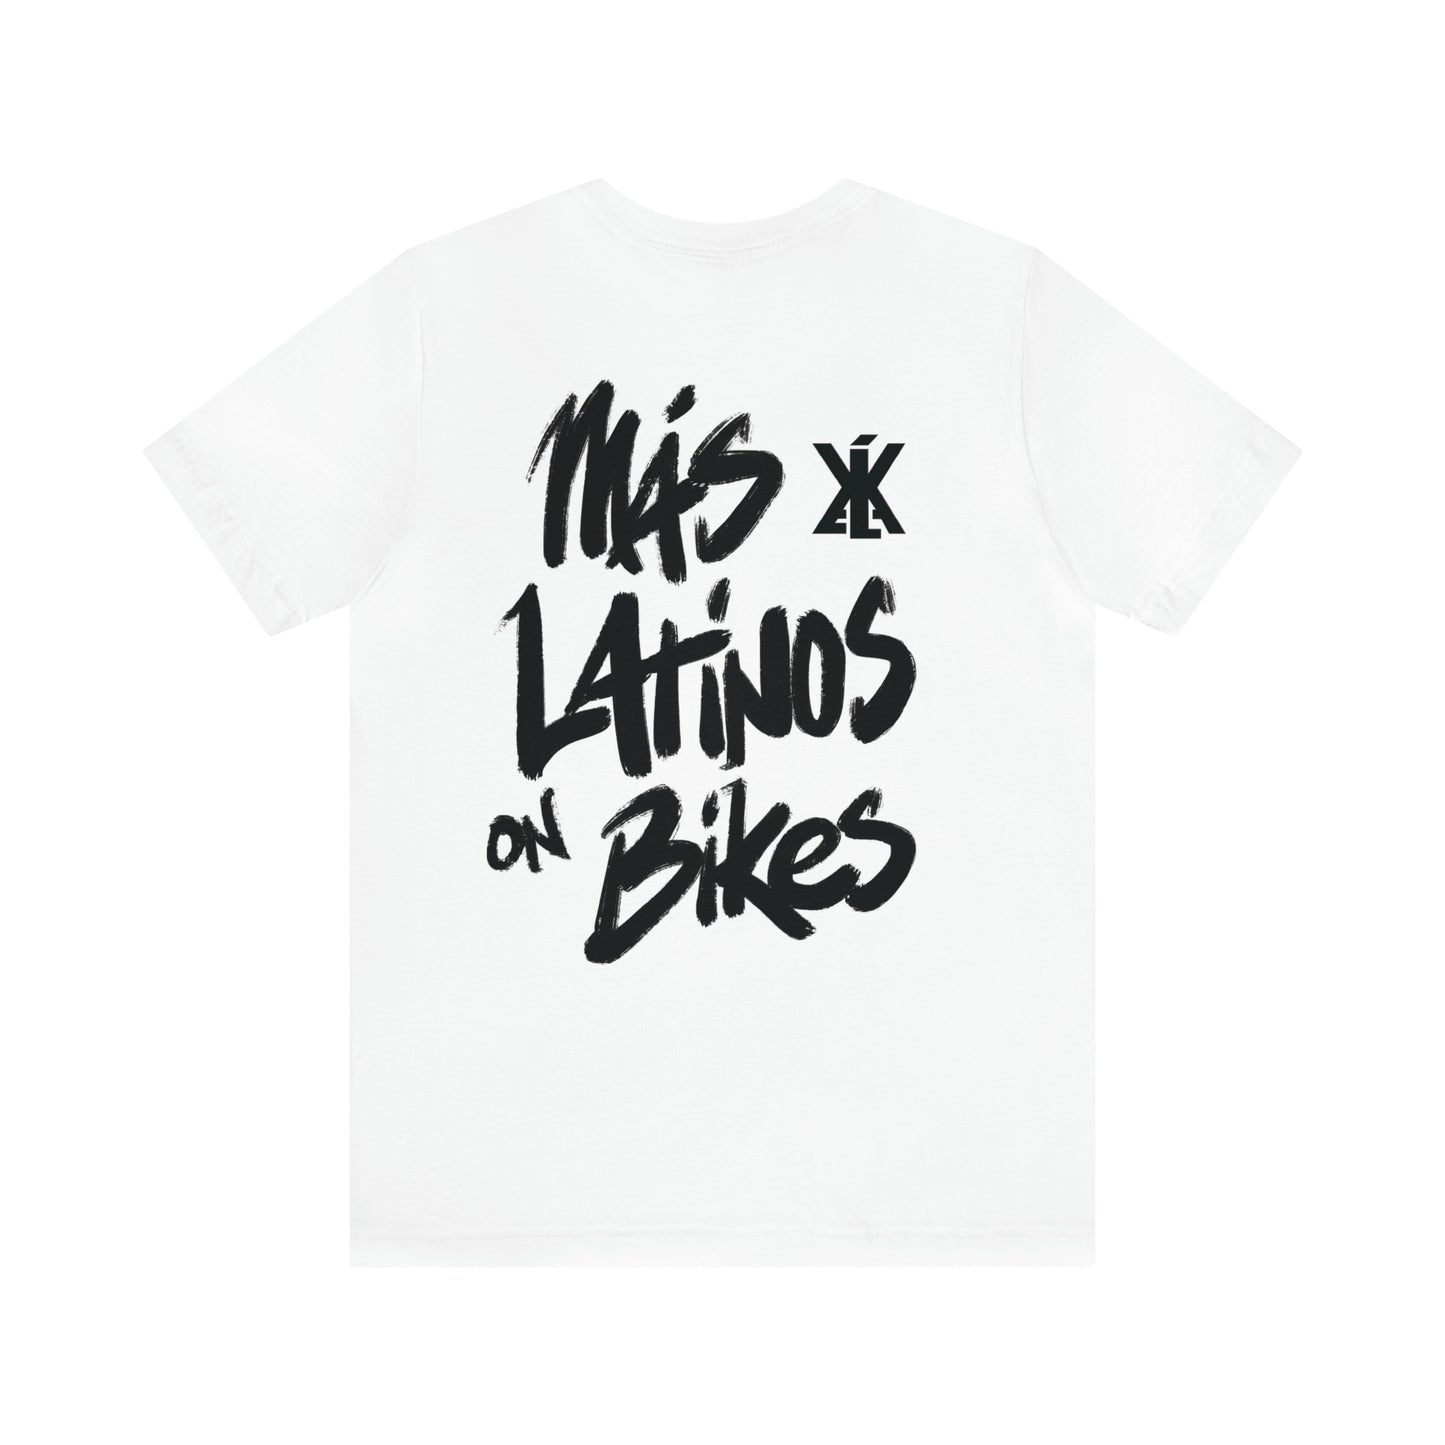 Mas Latinos on Bikes Tshirt